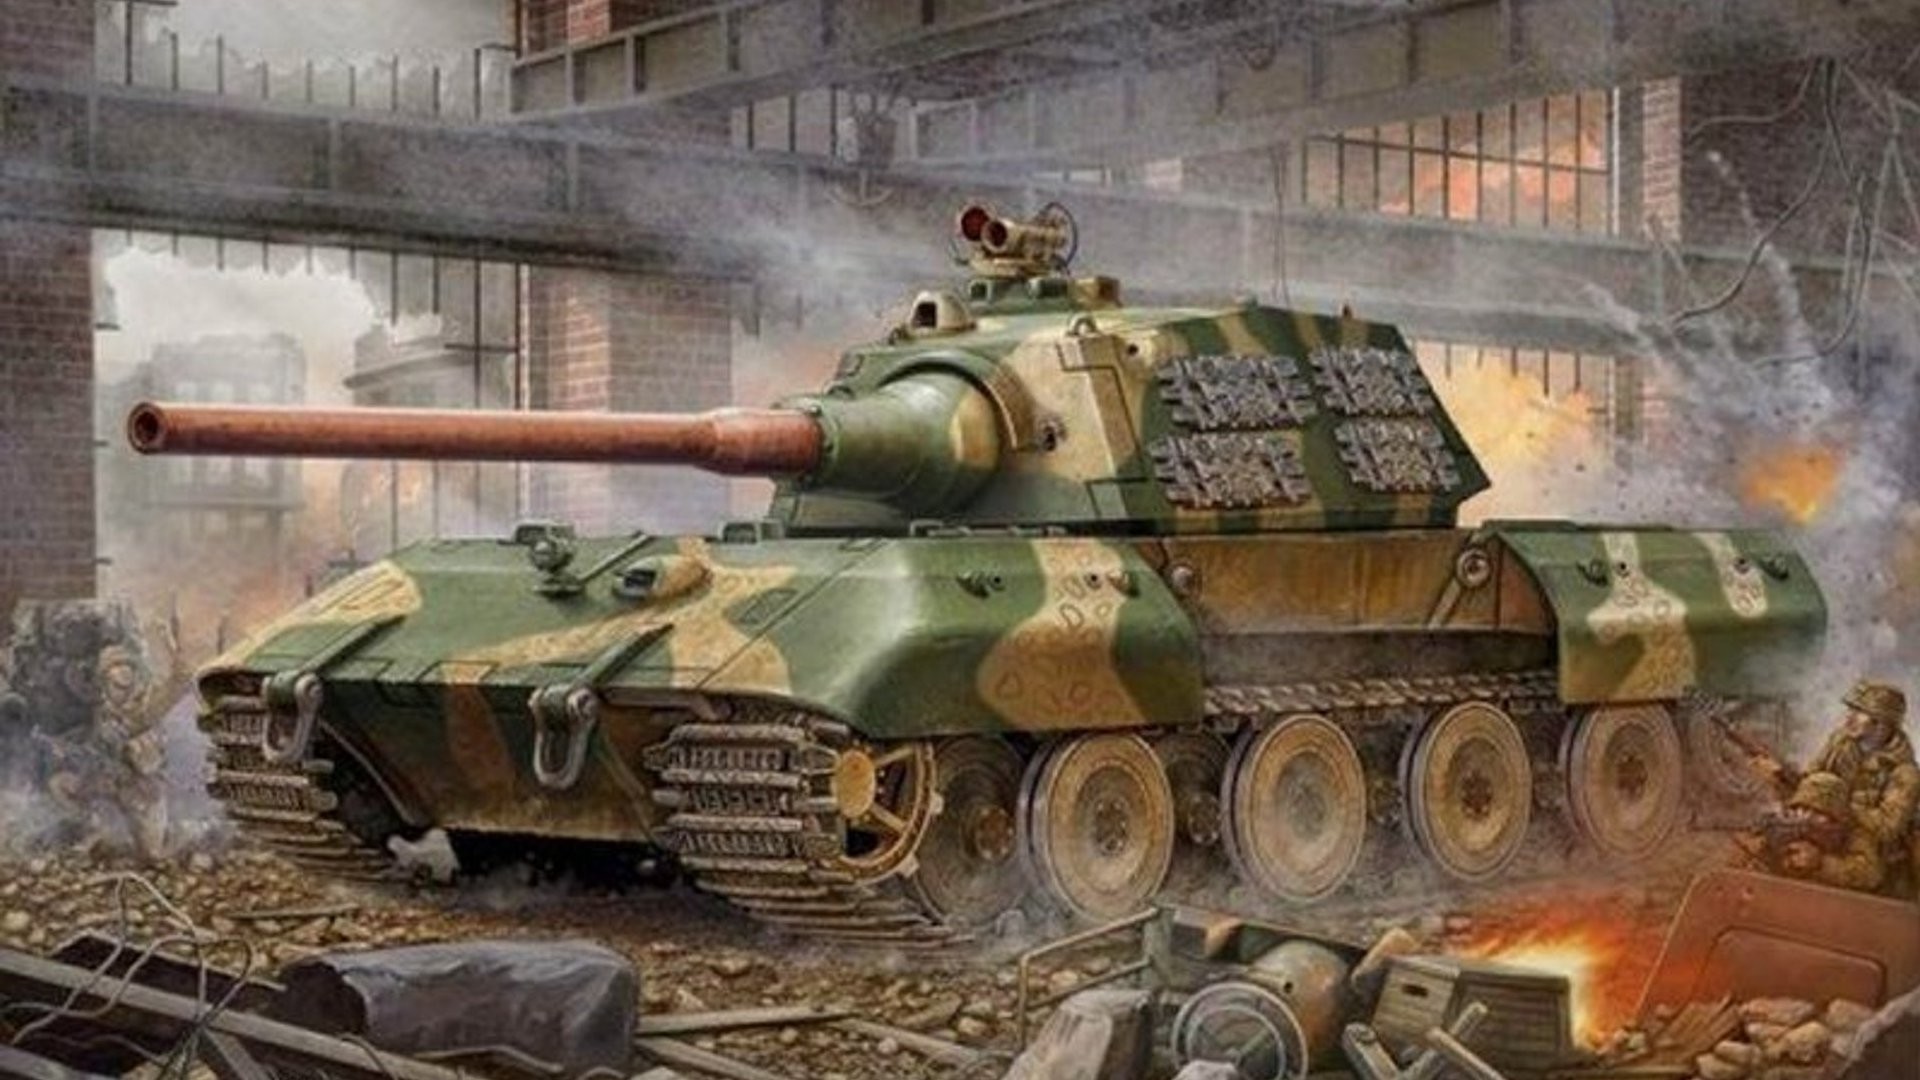 Tiger Tank Wallpaper High Resolution Amazing Wallpaperz - E 100 Tank Art - HD Wallpaper 